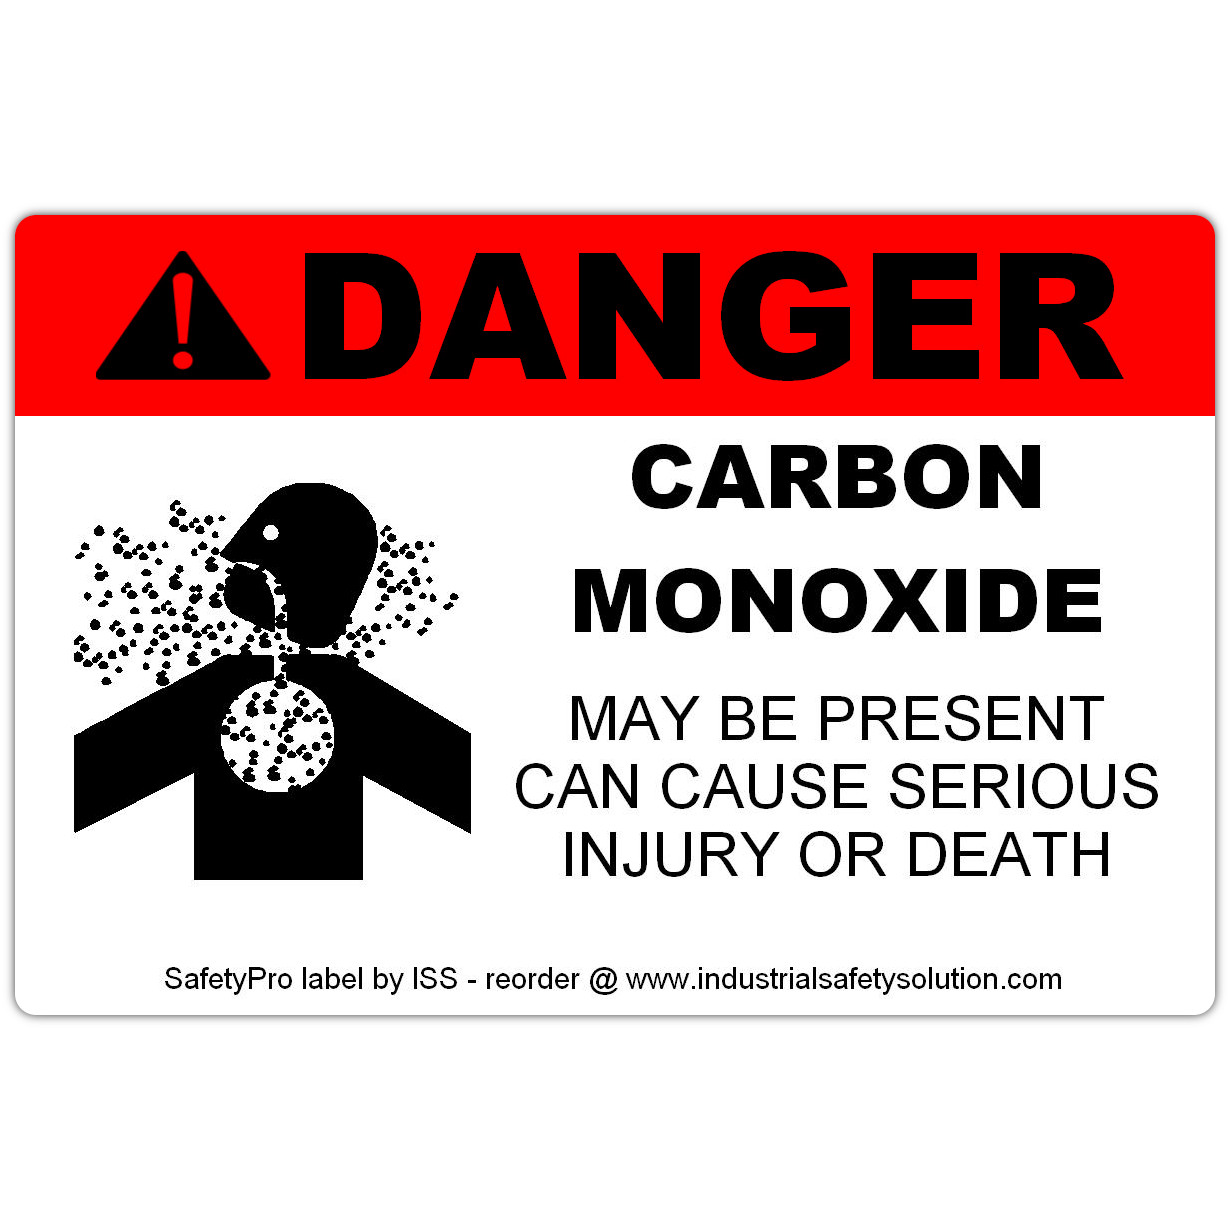 Ask a question about 4" x 6" DANGER Carbon Monoxide Safety Label